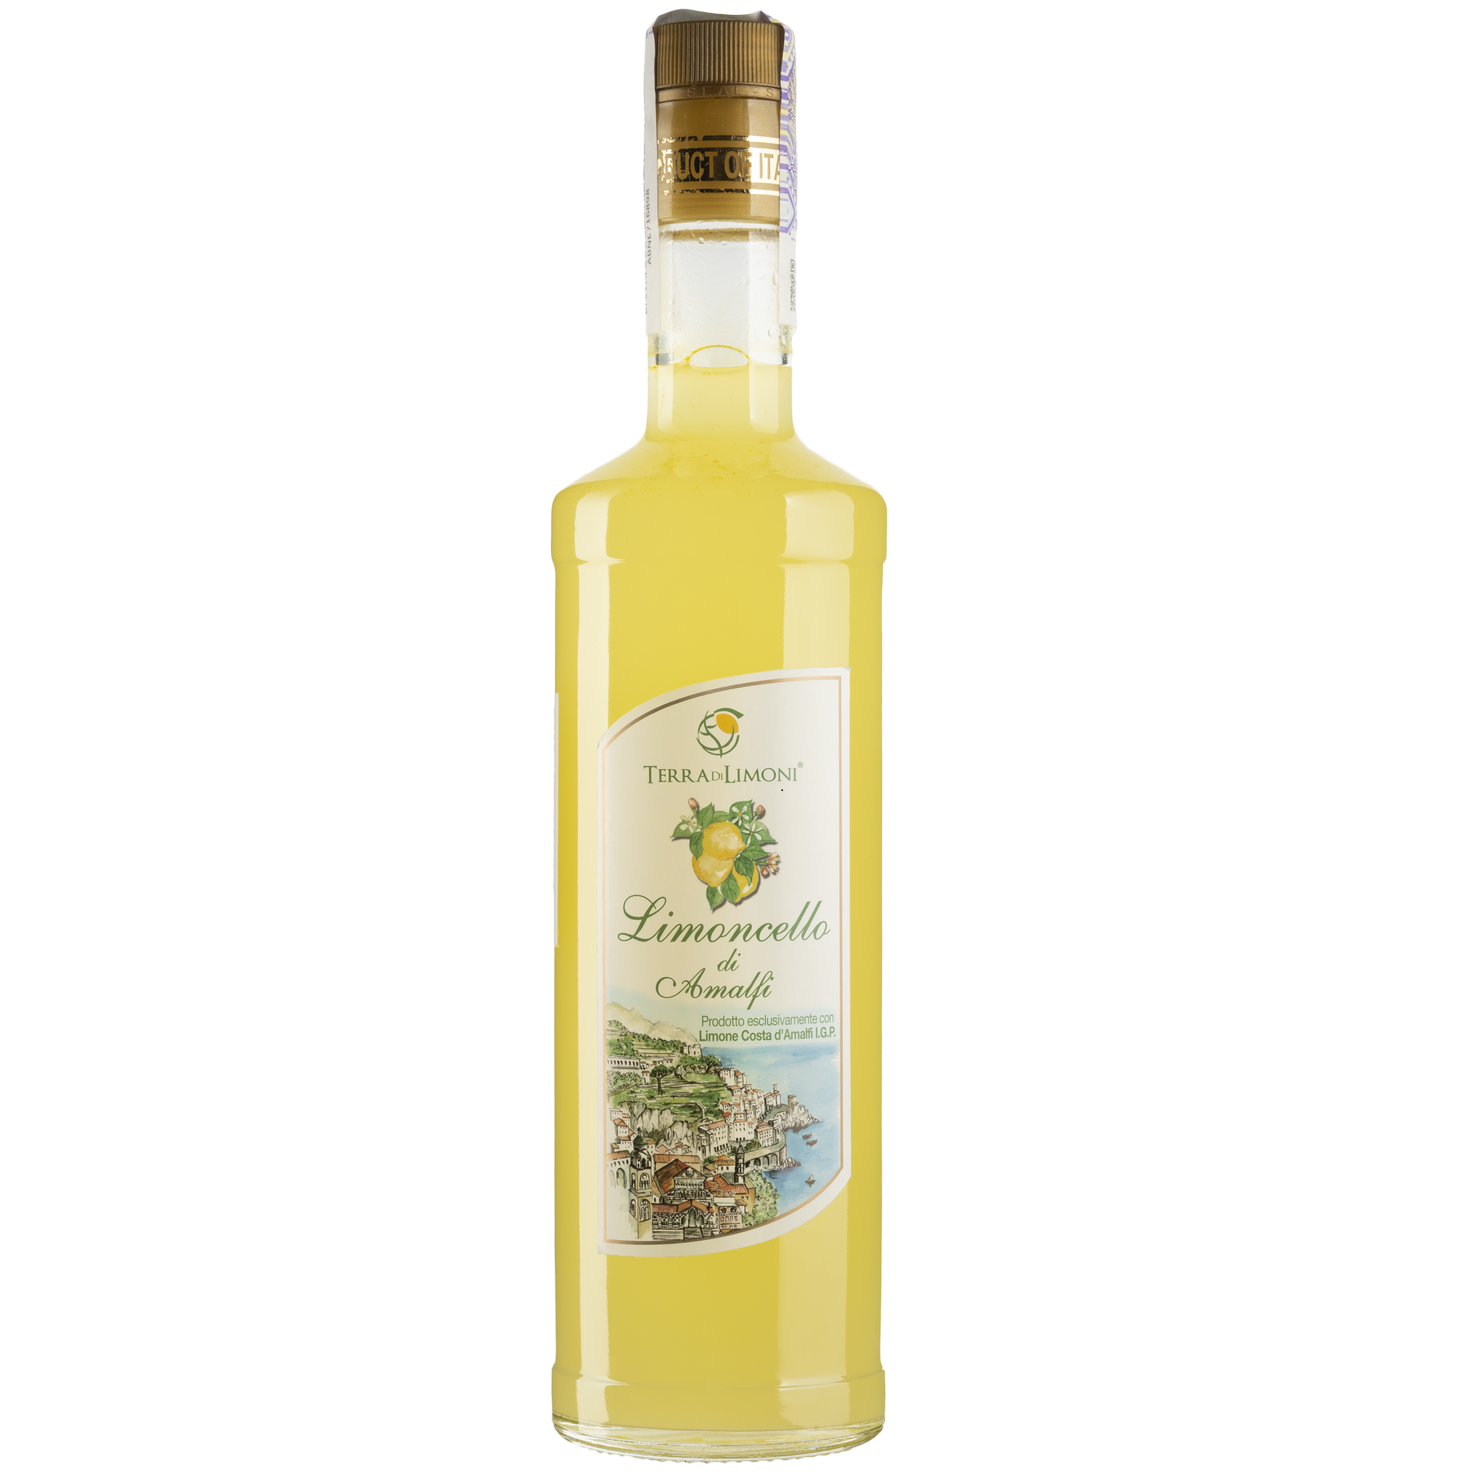 Ликер Terra di Limoni Liquore al limoncello Costa d'Amalfi, 25%, 0,7 л (Q5893) - фото 1